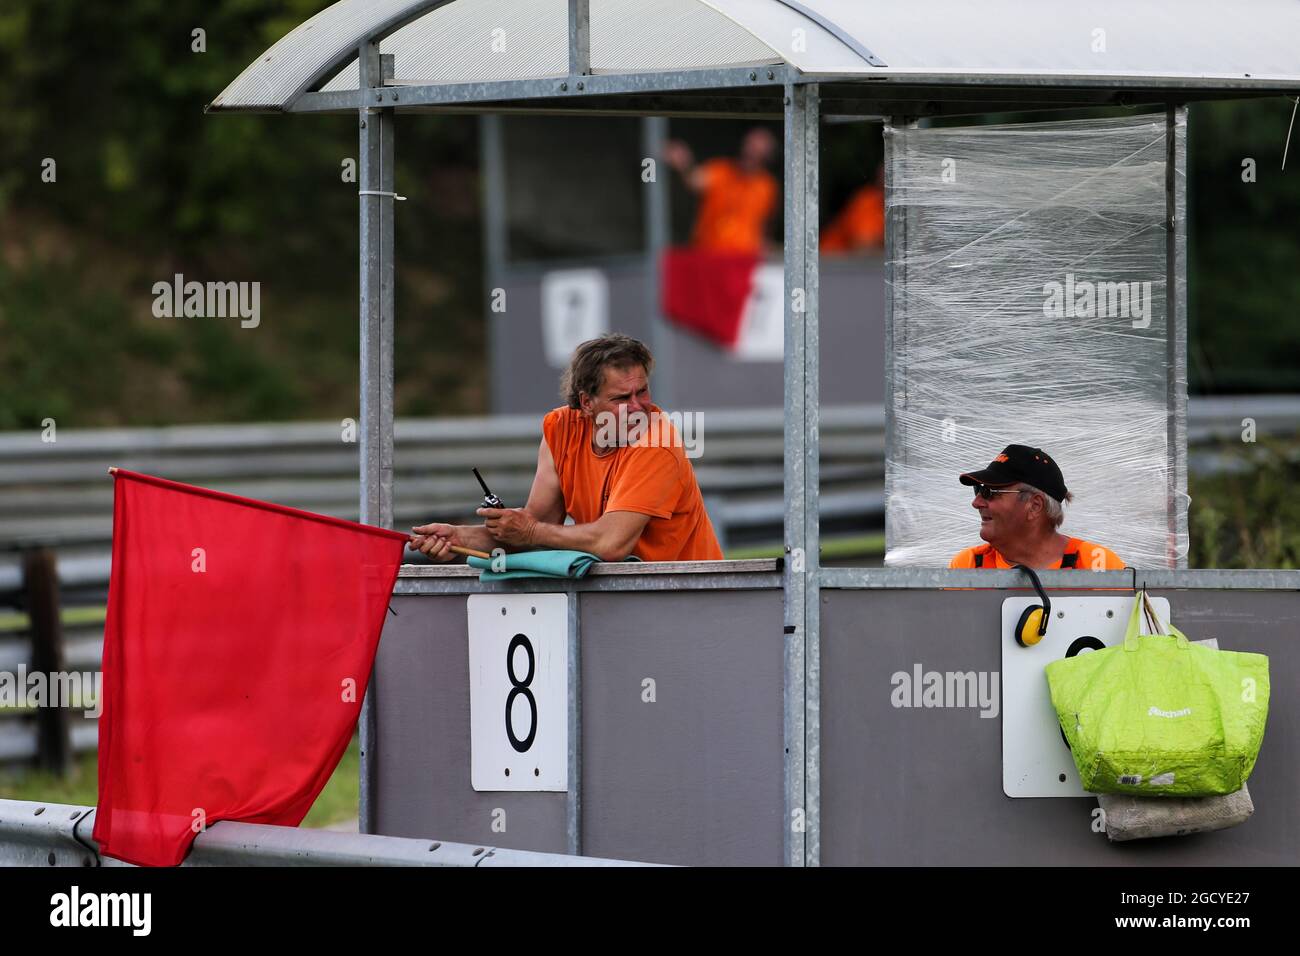 Marshal with regd flag. Formula One Testing. Tuesday 31st July 2018. Budapest, Hungary. Stock Photo